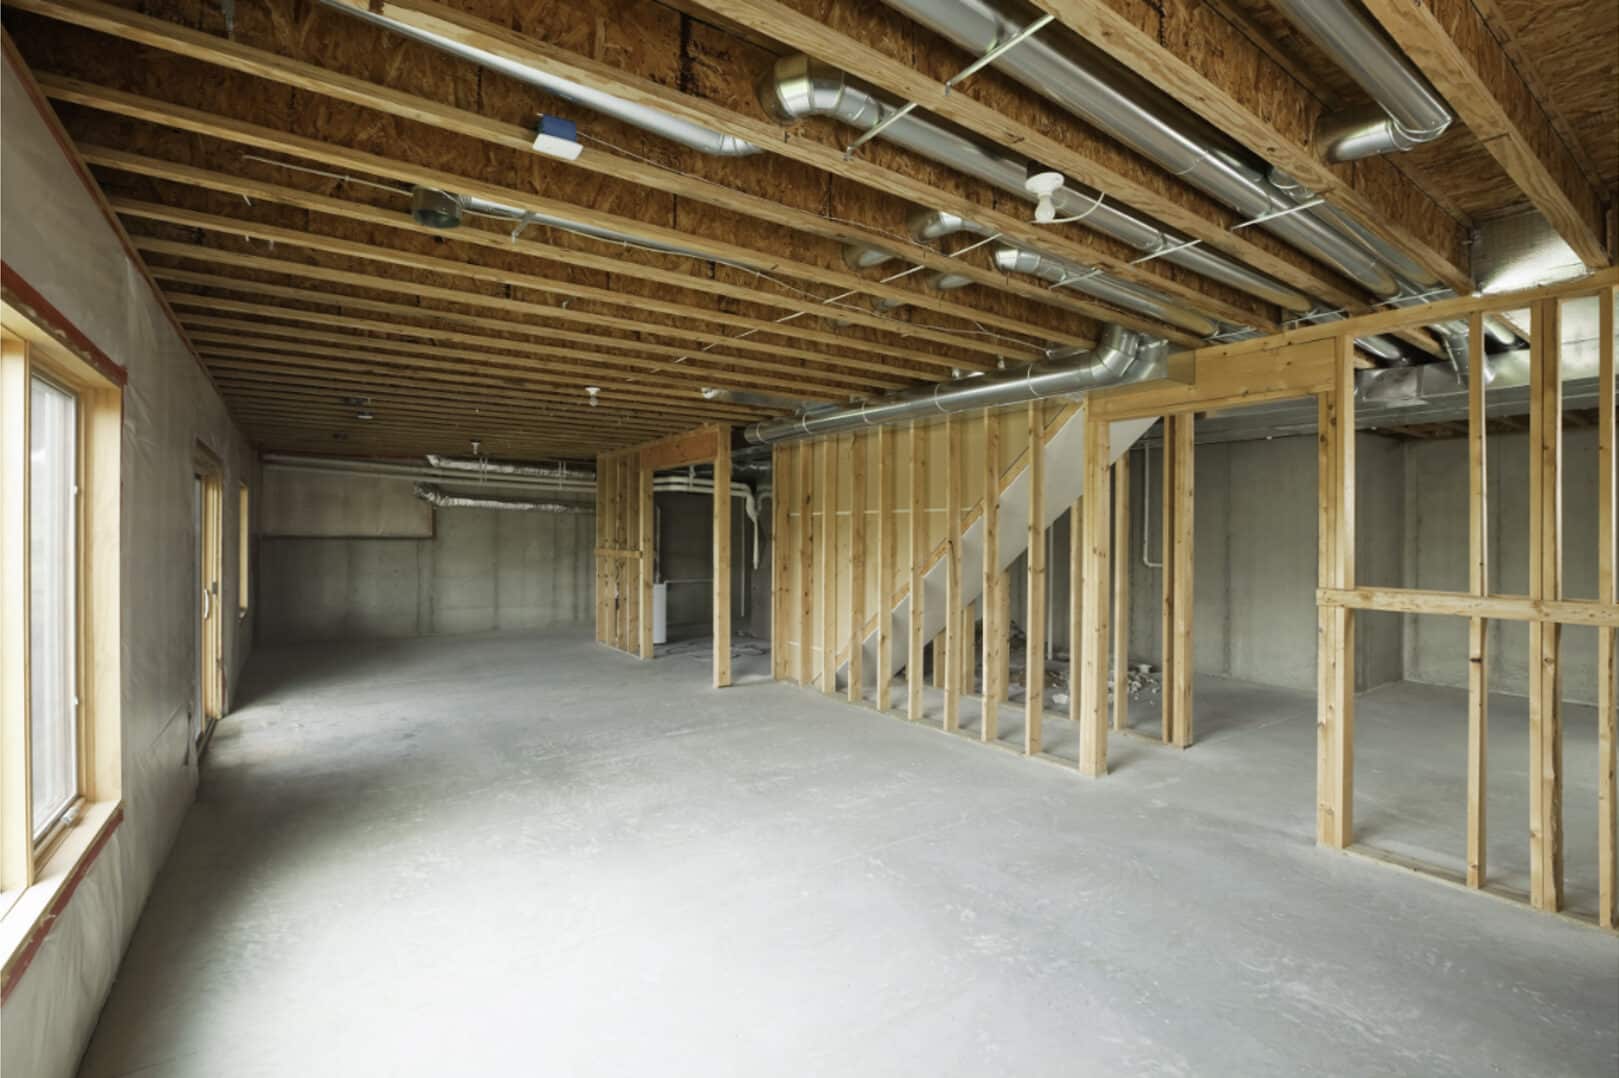 un-finished basement